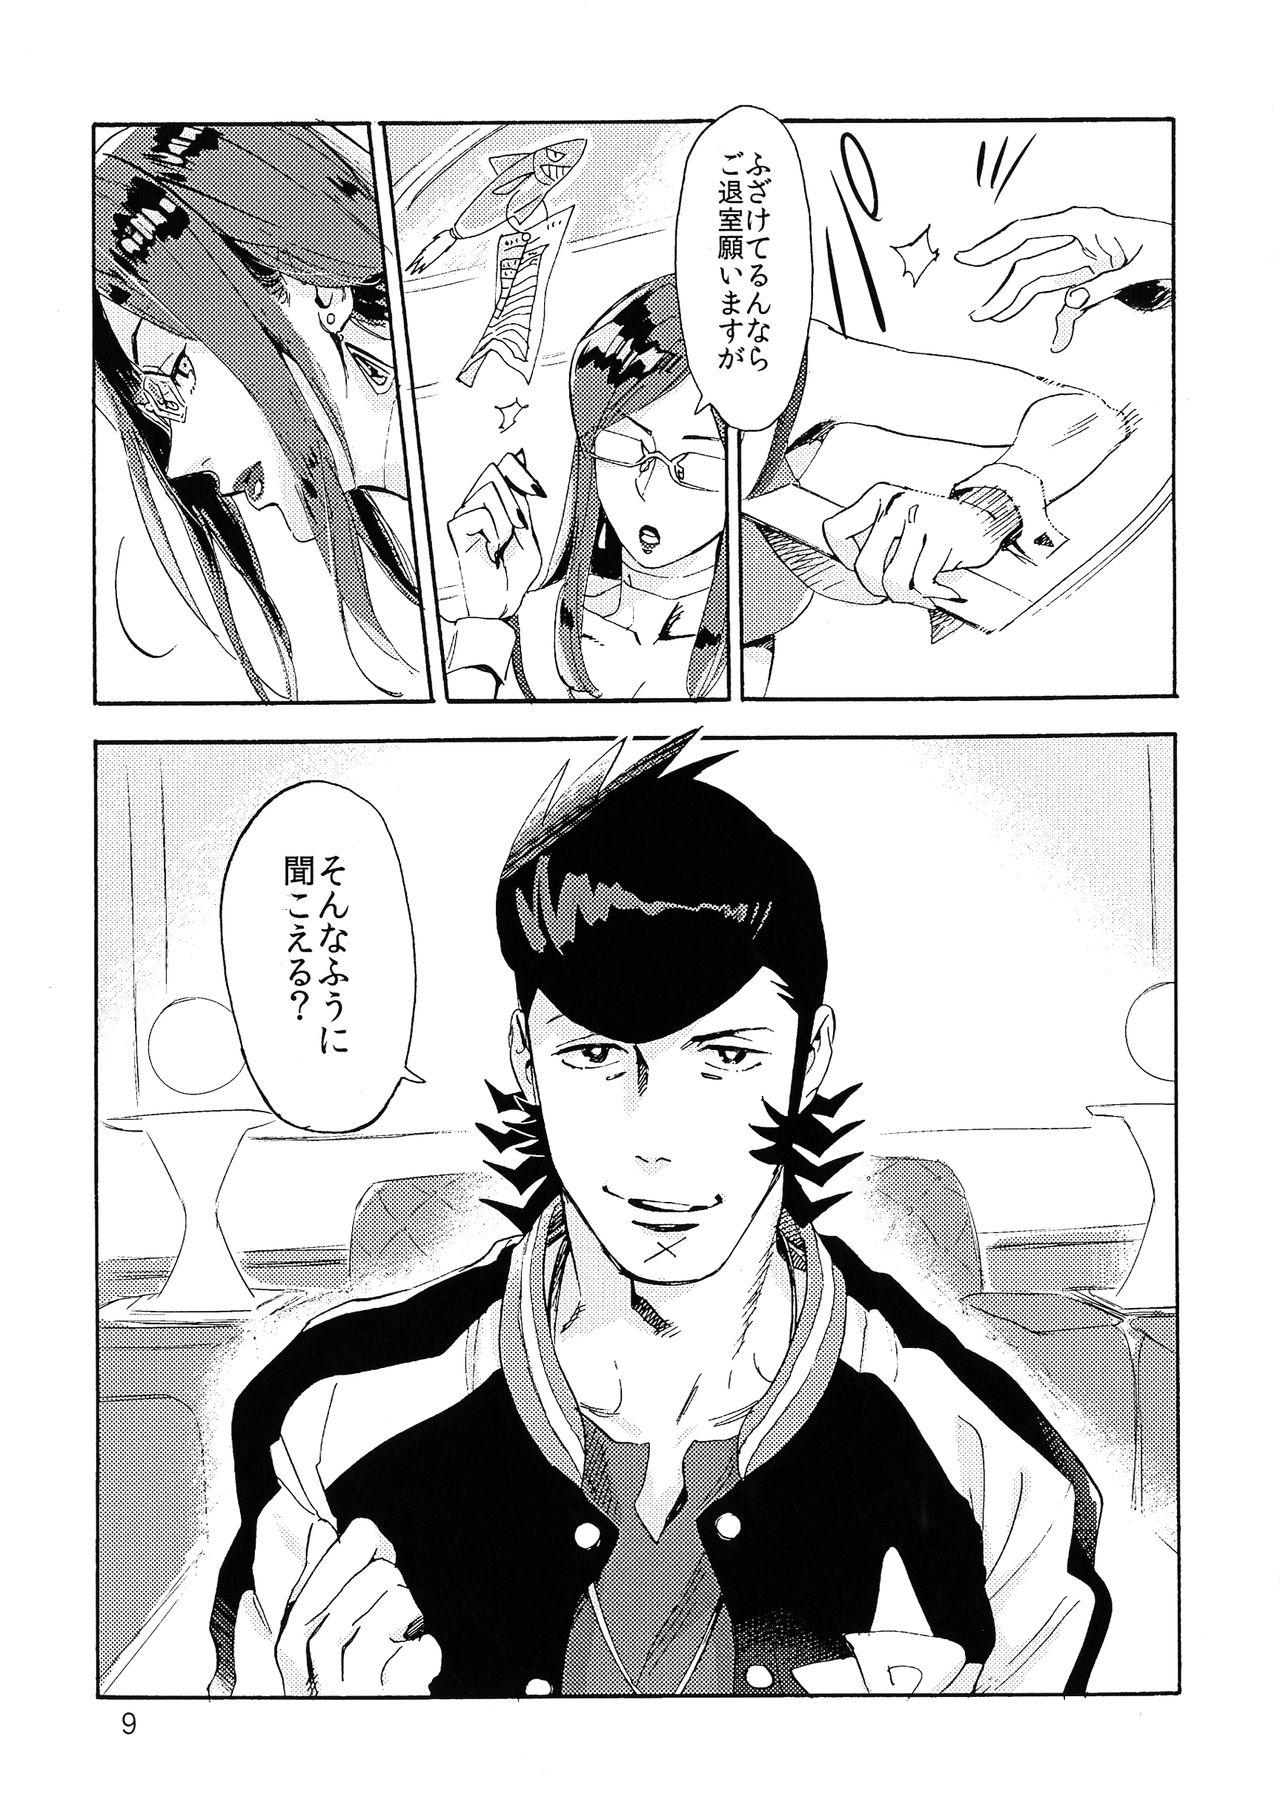 Desperate [Buchimake Matsuri (Mizubuchi Maki)] VIP Room e Youkoso! - Welcome to VIP-room! (Space Dandy) [2019-09-07] - Space dandy Speculum - Page 8